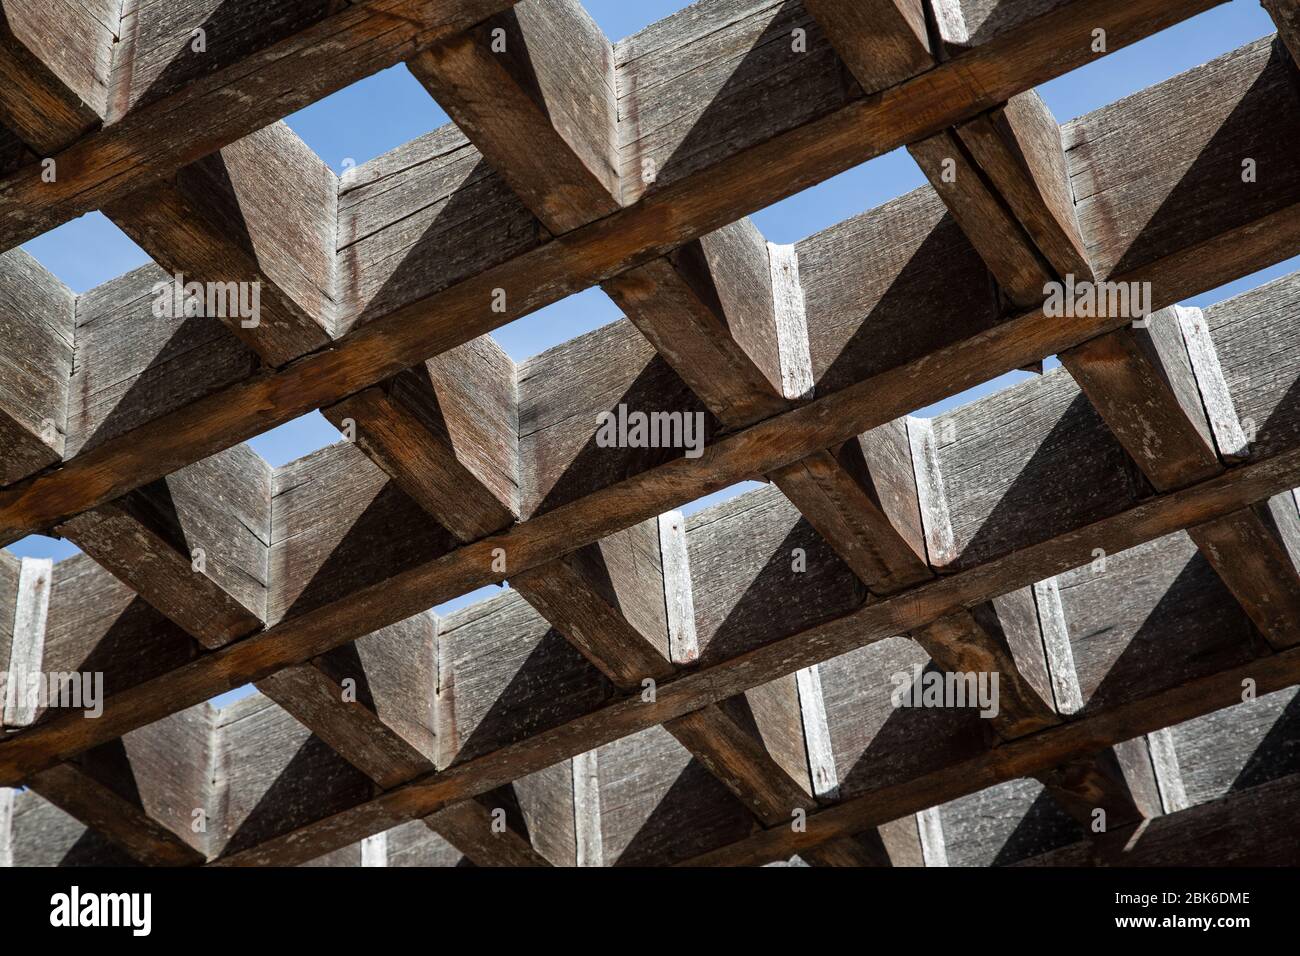 Barres en bois formant une grille d'ombrage vue du dessous Banque D'Images